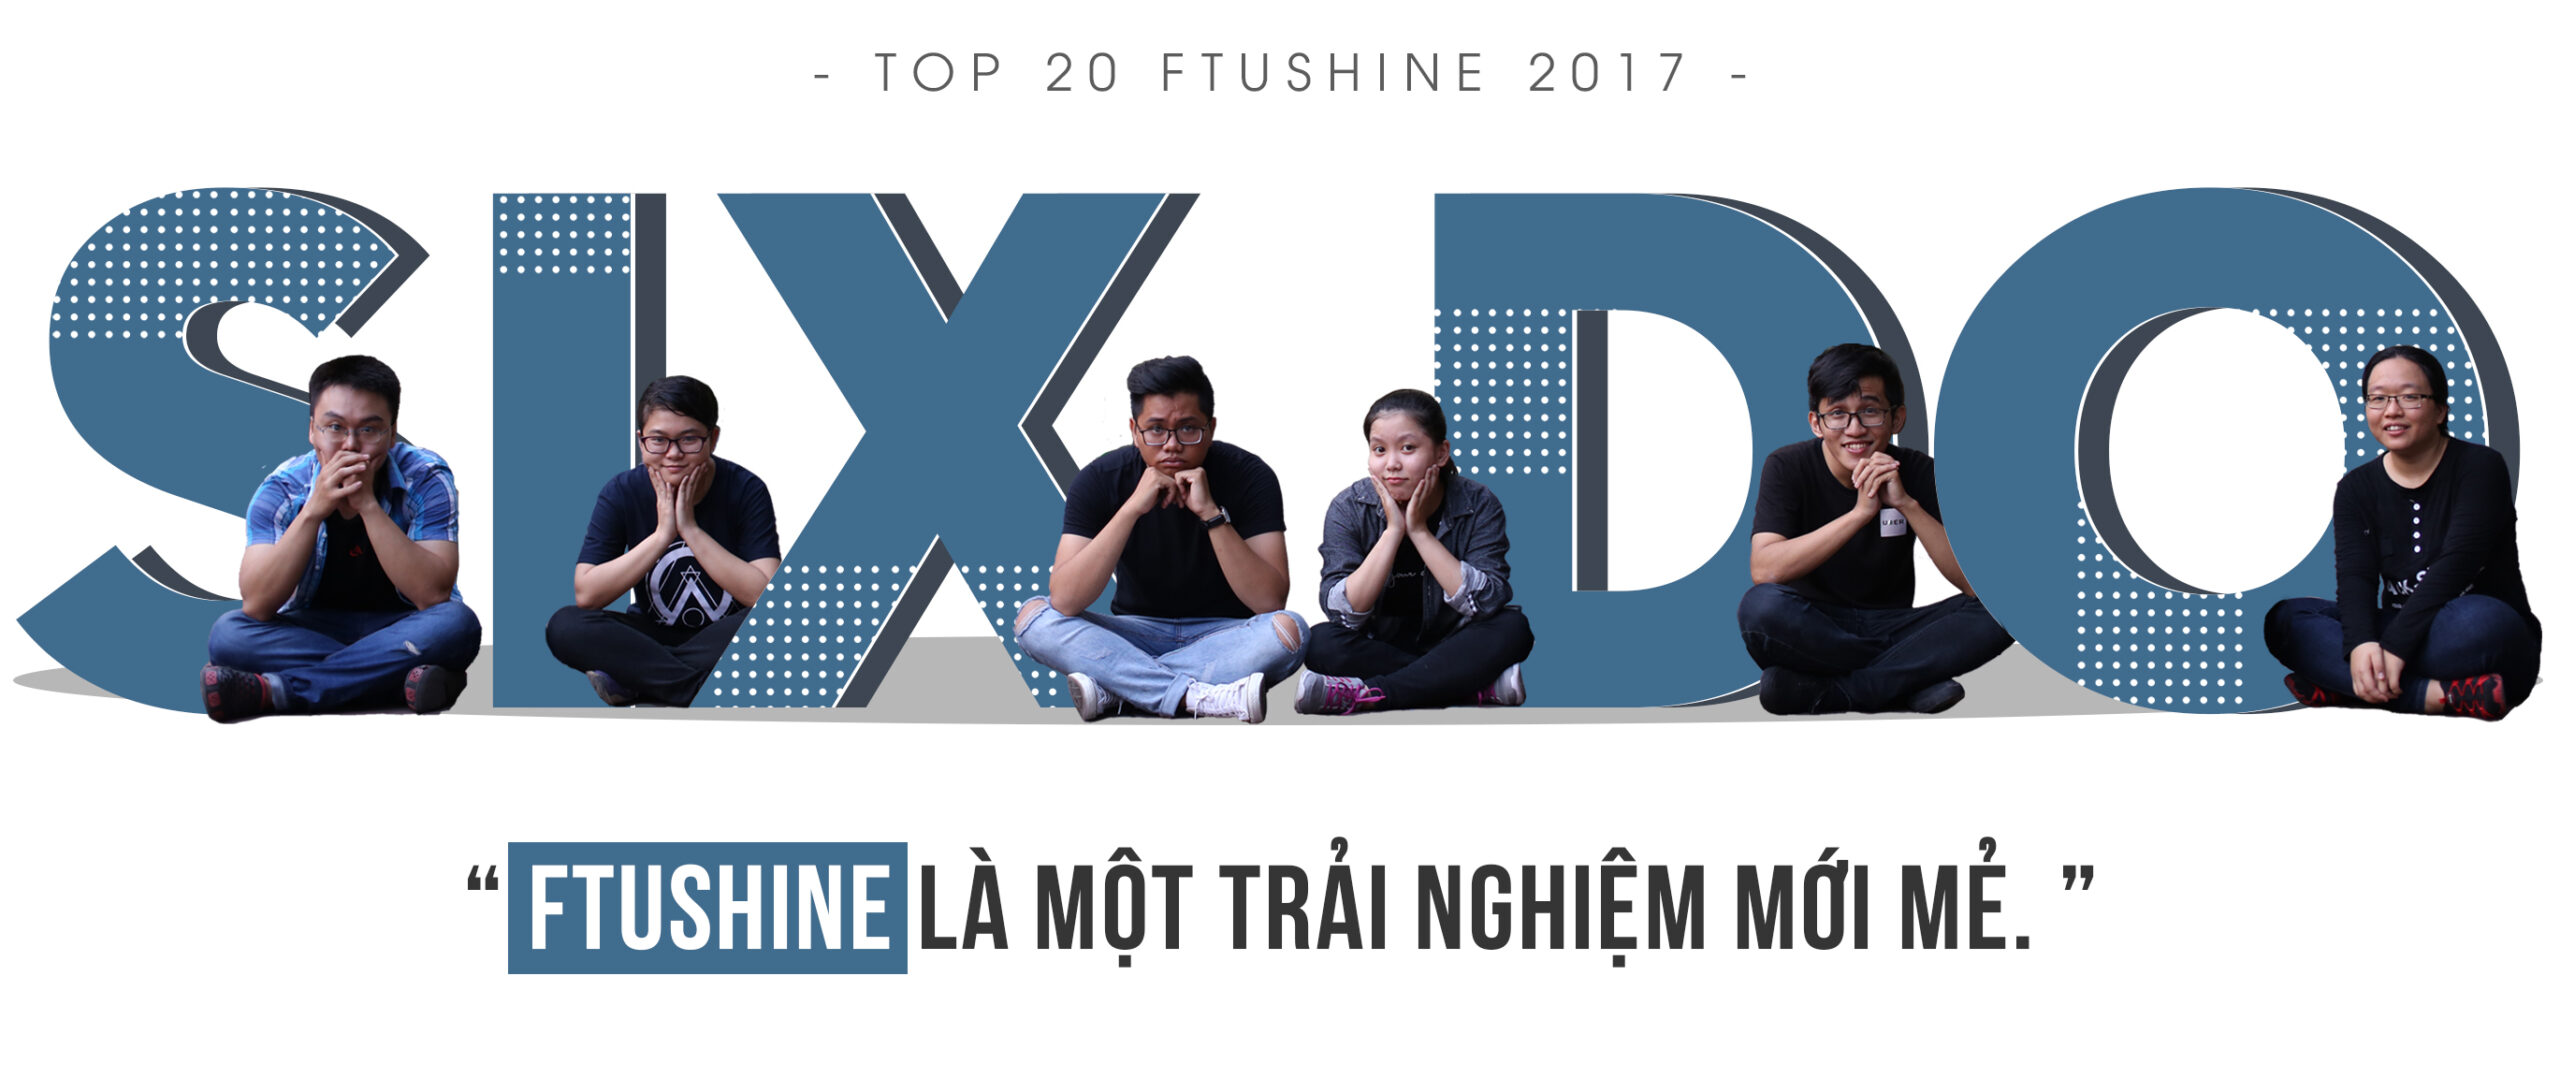 [Top 20 FTUShine 2017] SIX DO: “FTUShine là một trải nghiệm mới mẻ”